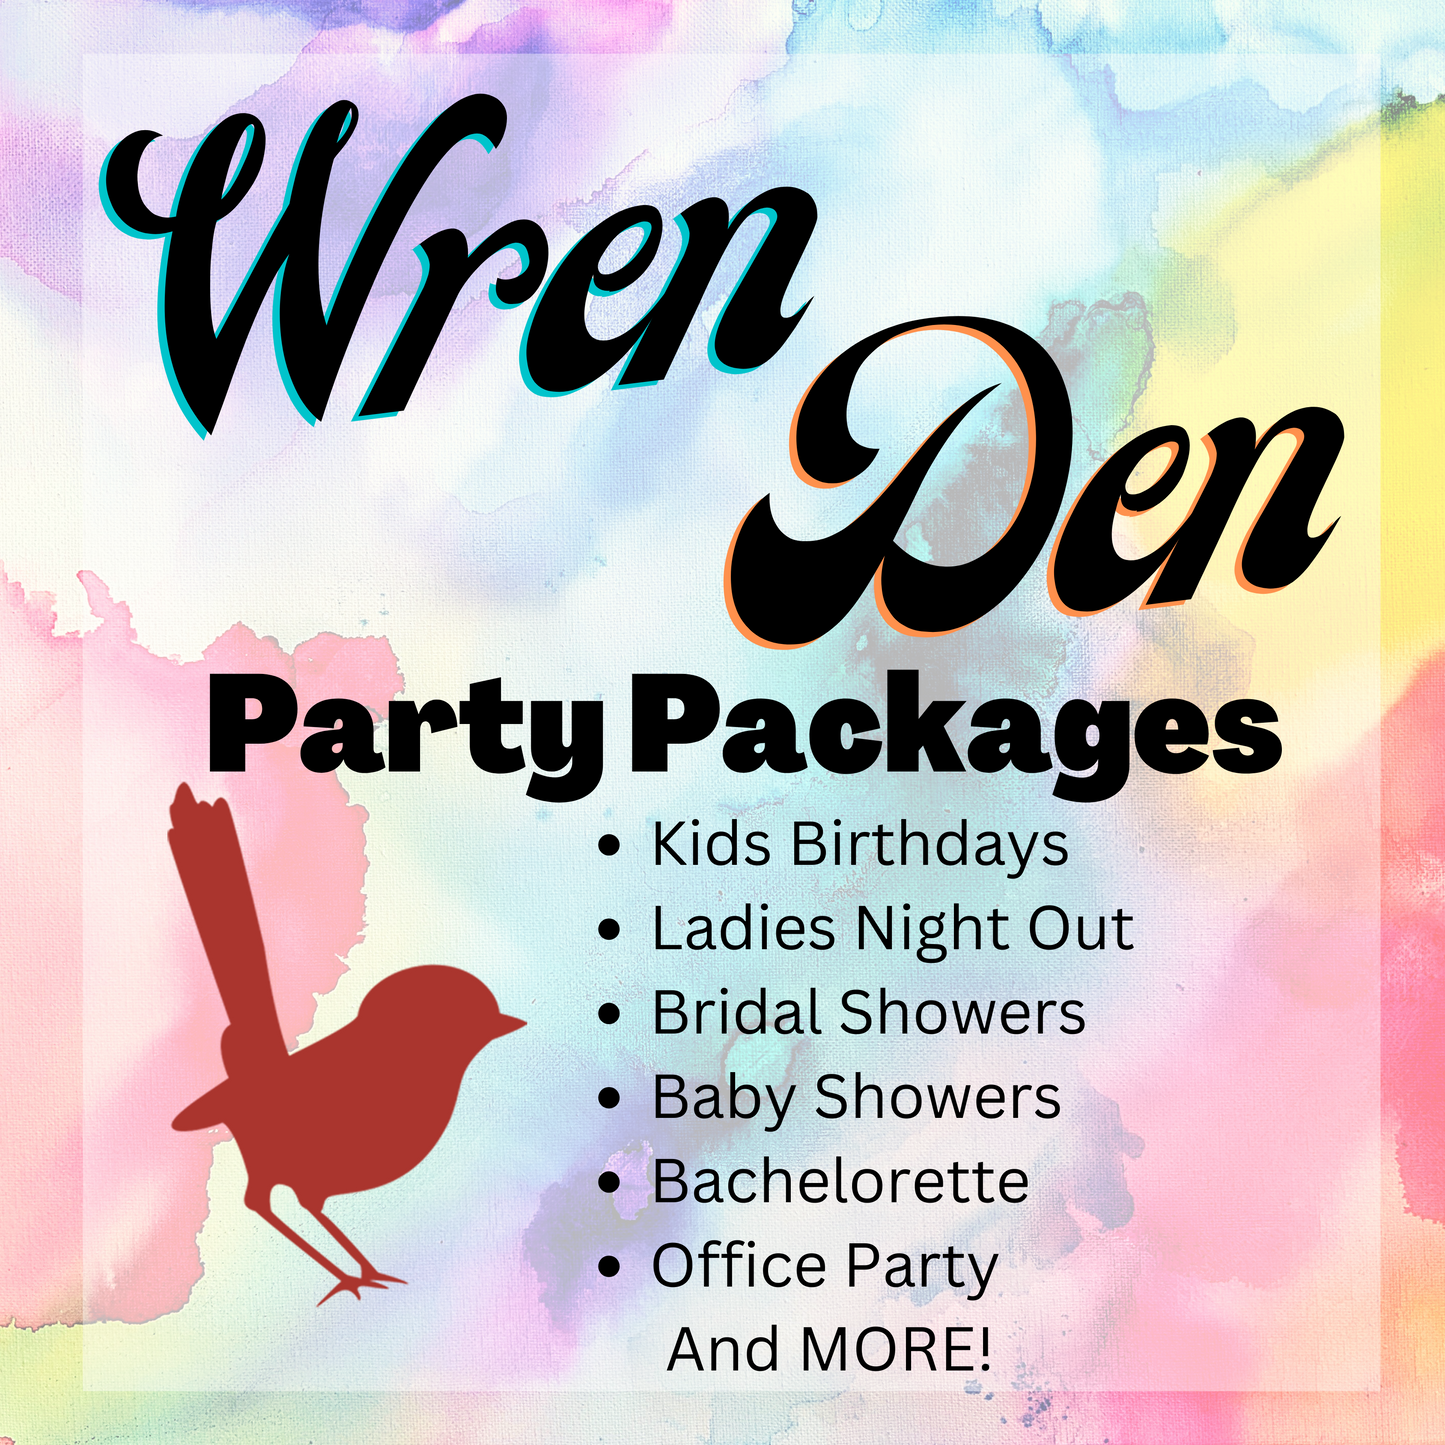 Wren Den Party Packages